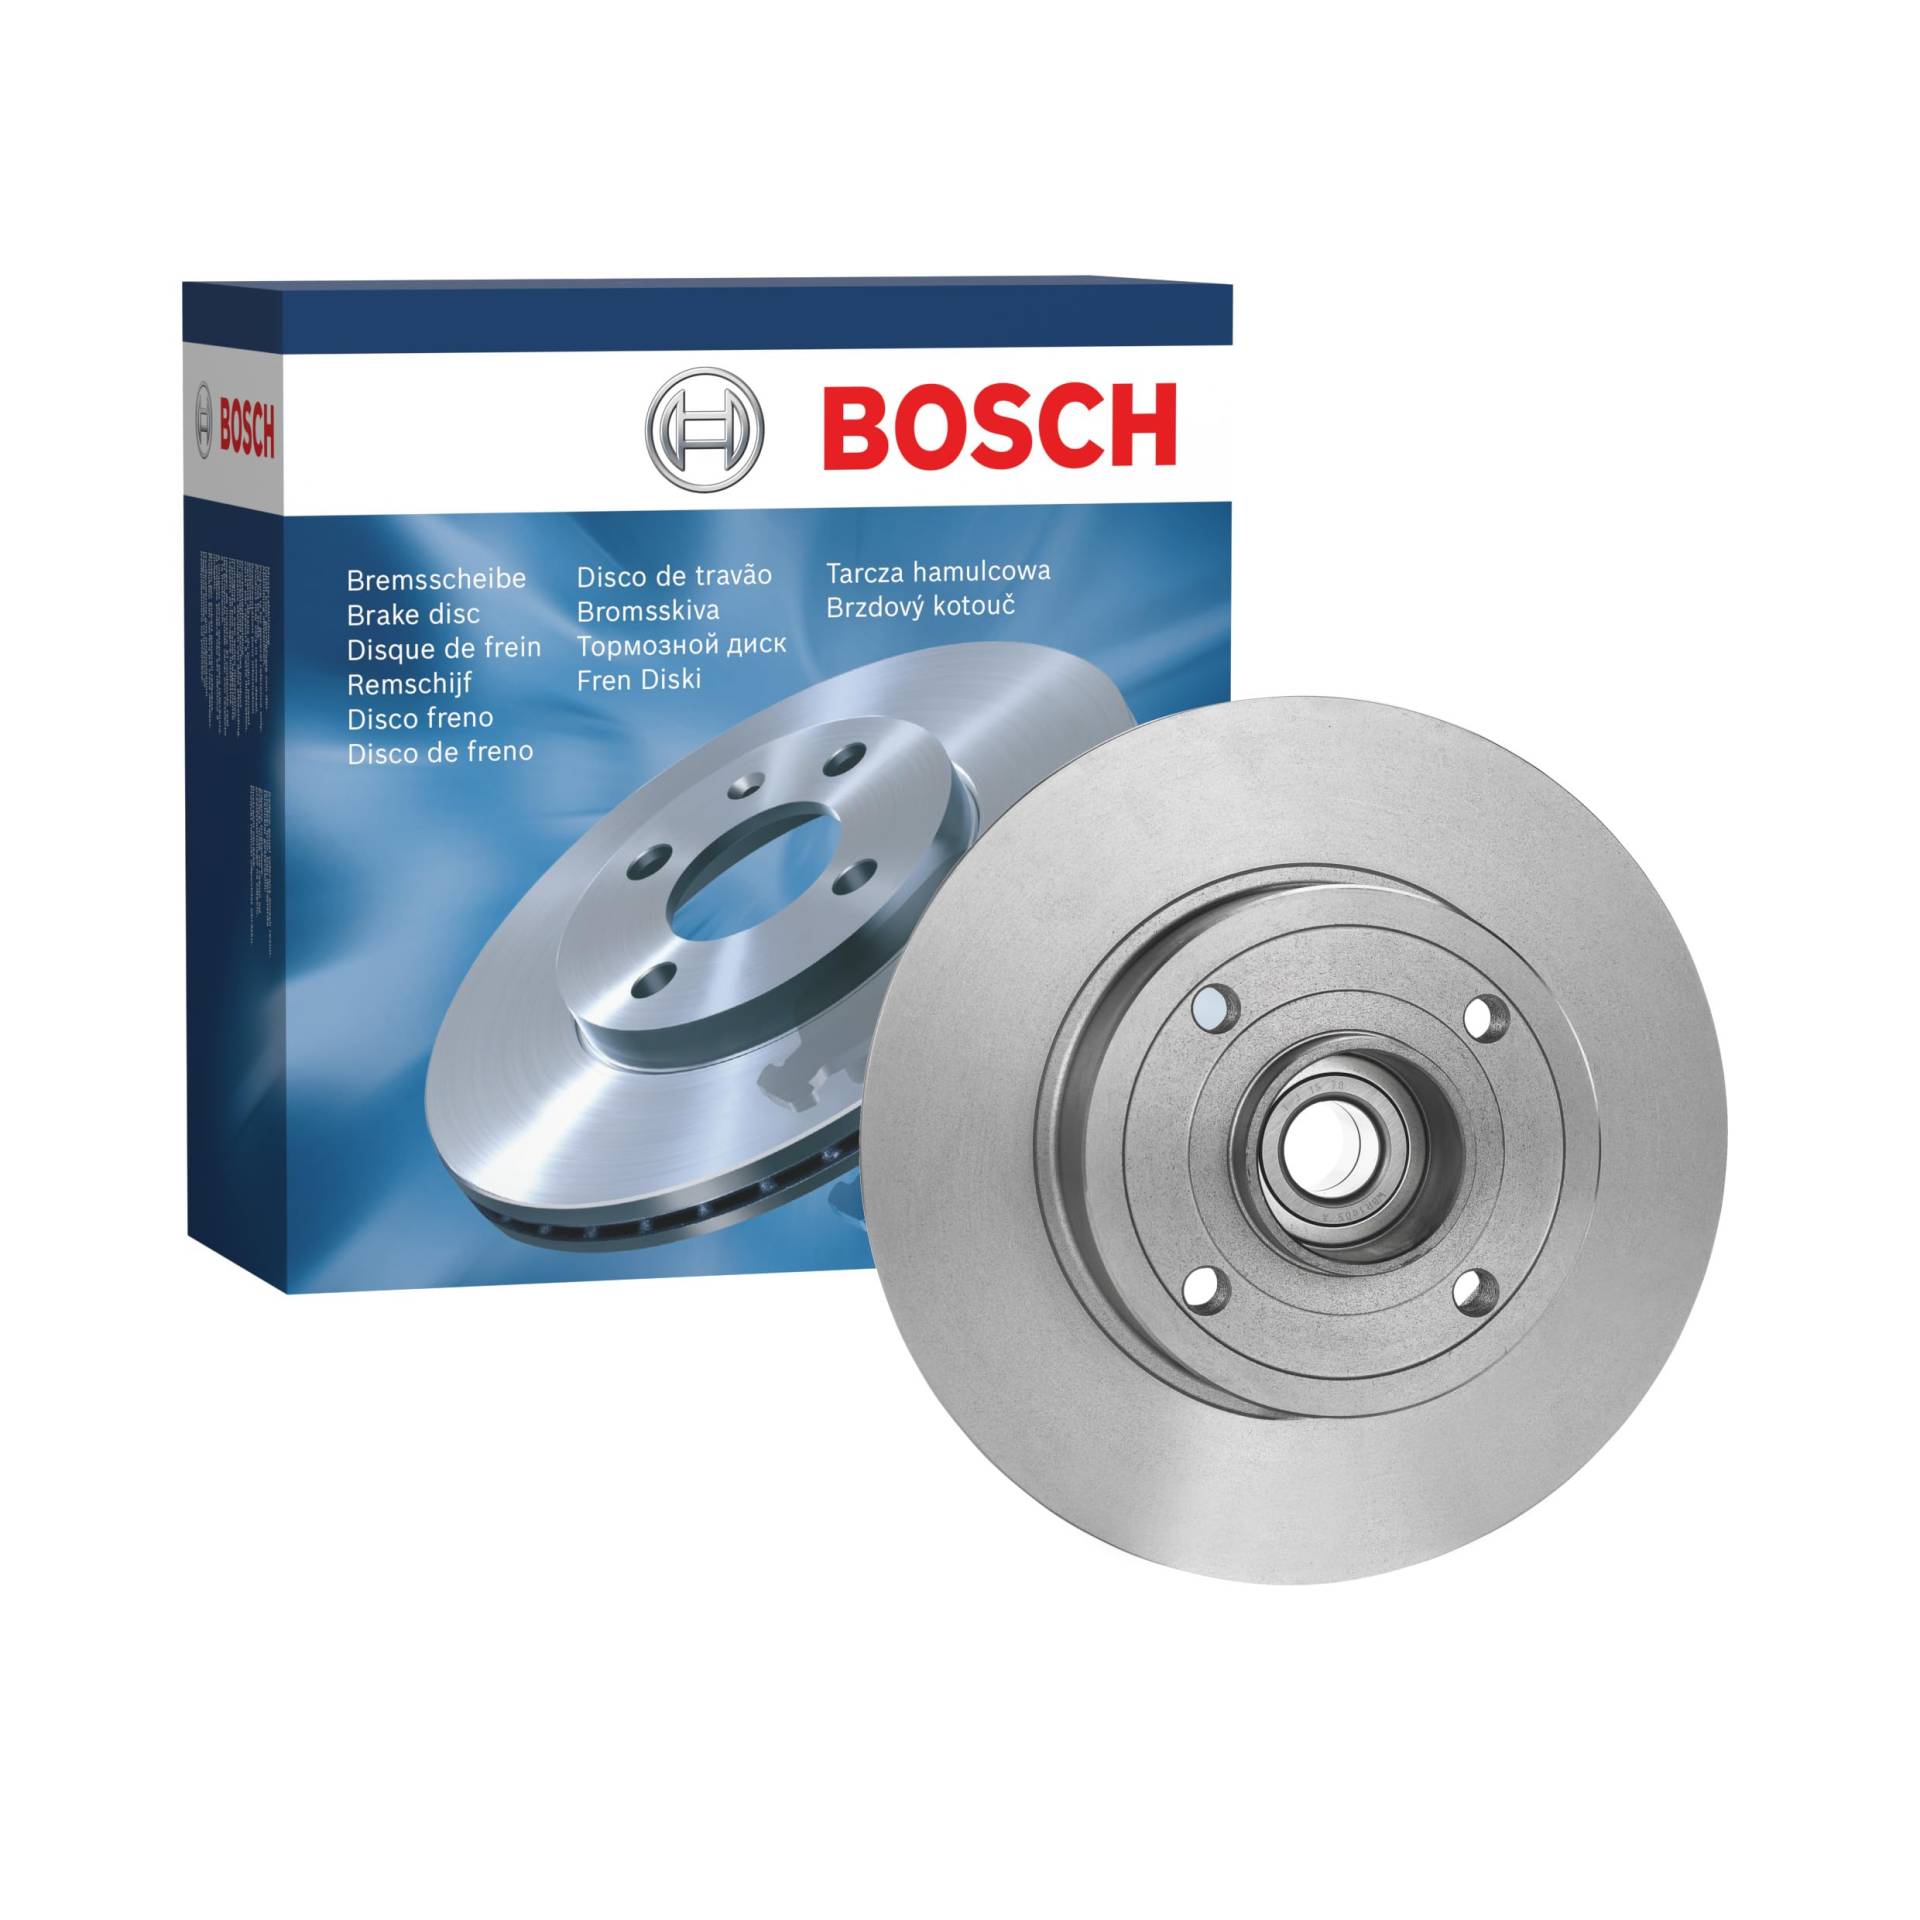 Bosch BD1127 Bremsscheiben mit Radlager - Hinterachse - ECE-R90 Zertifizierung - eine Bremsscheibe von Bosch Automotive